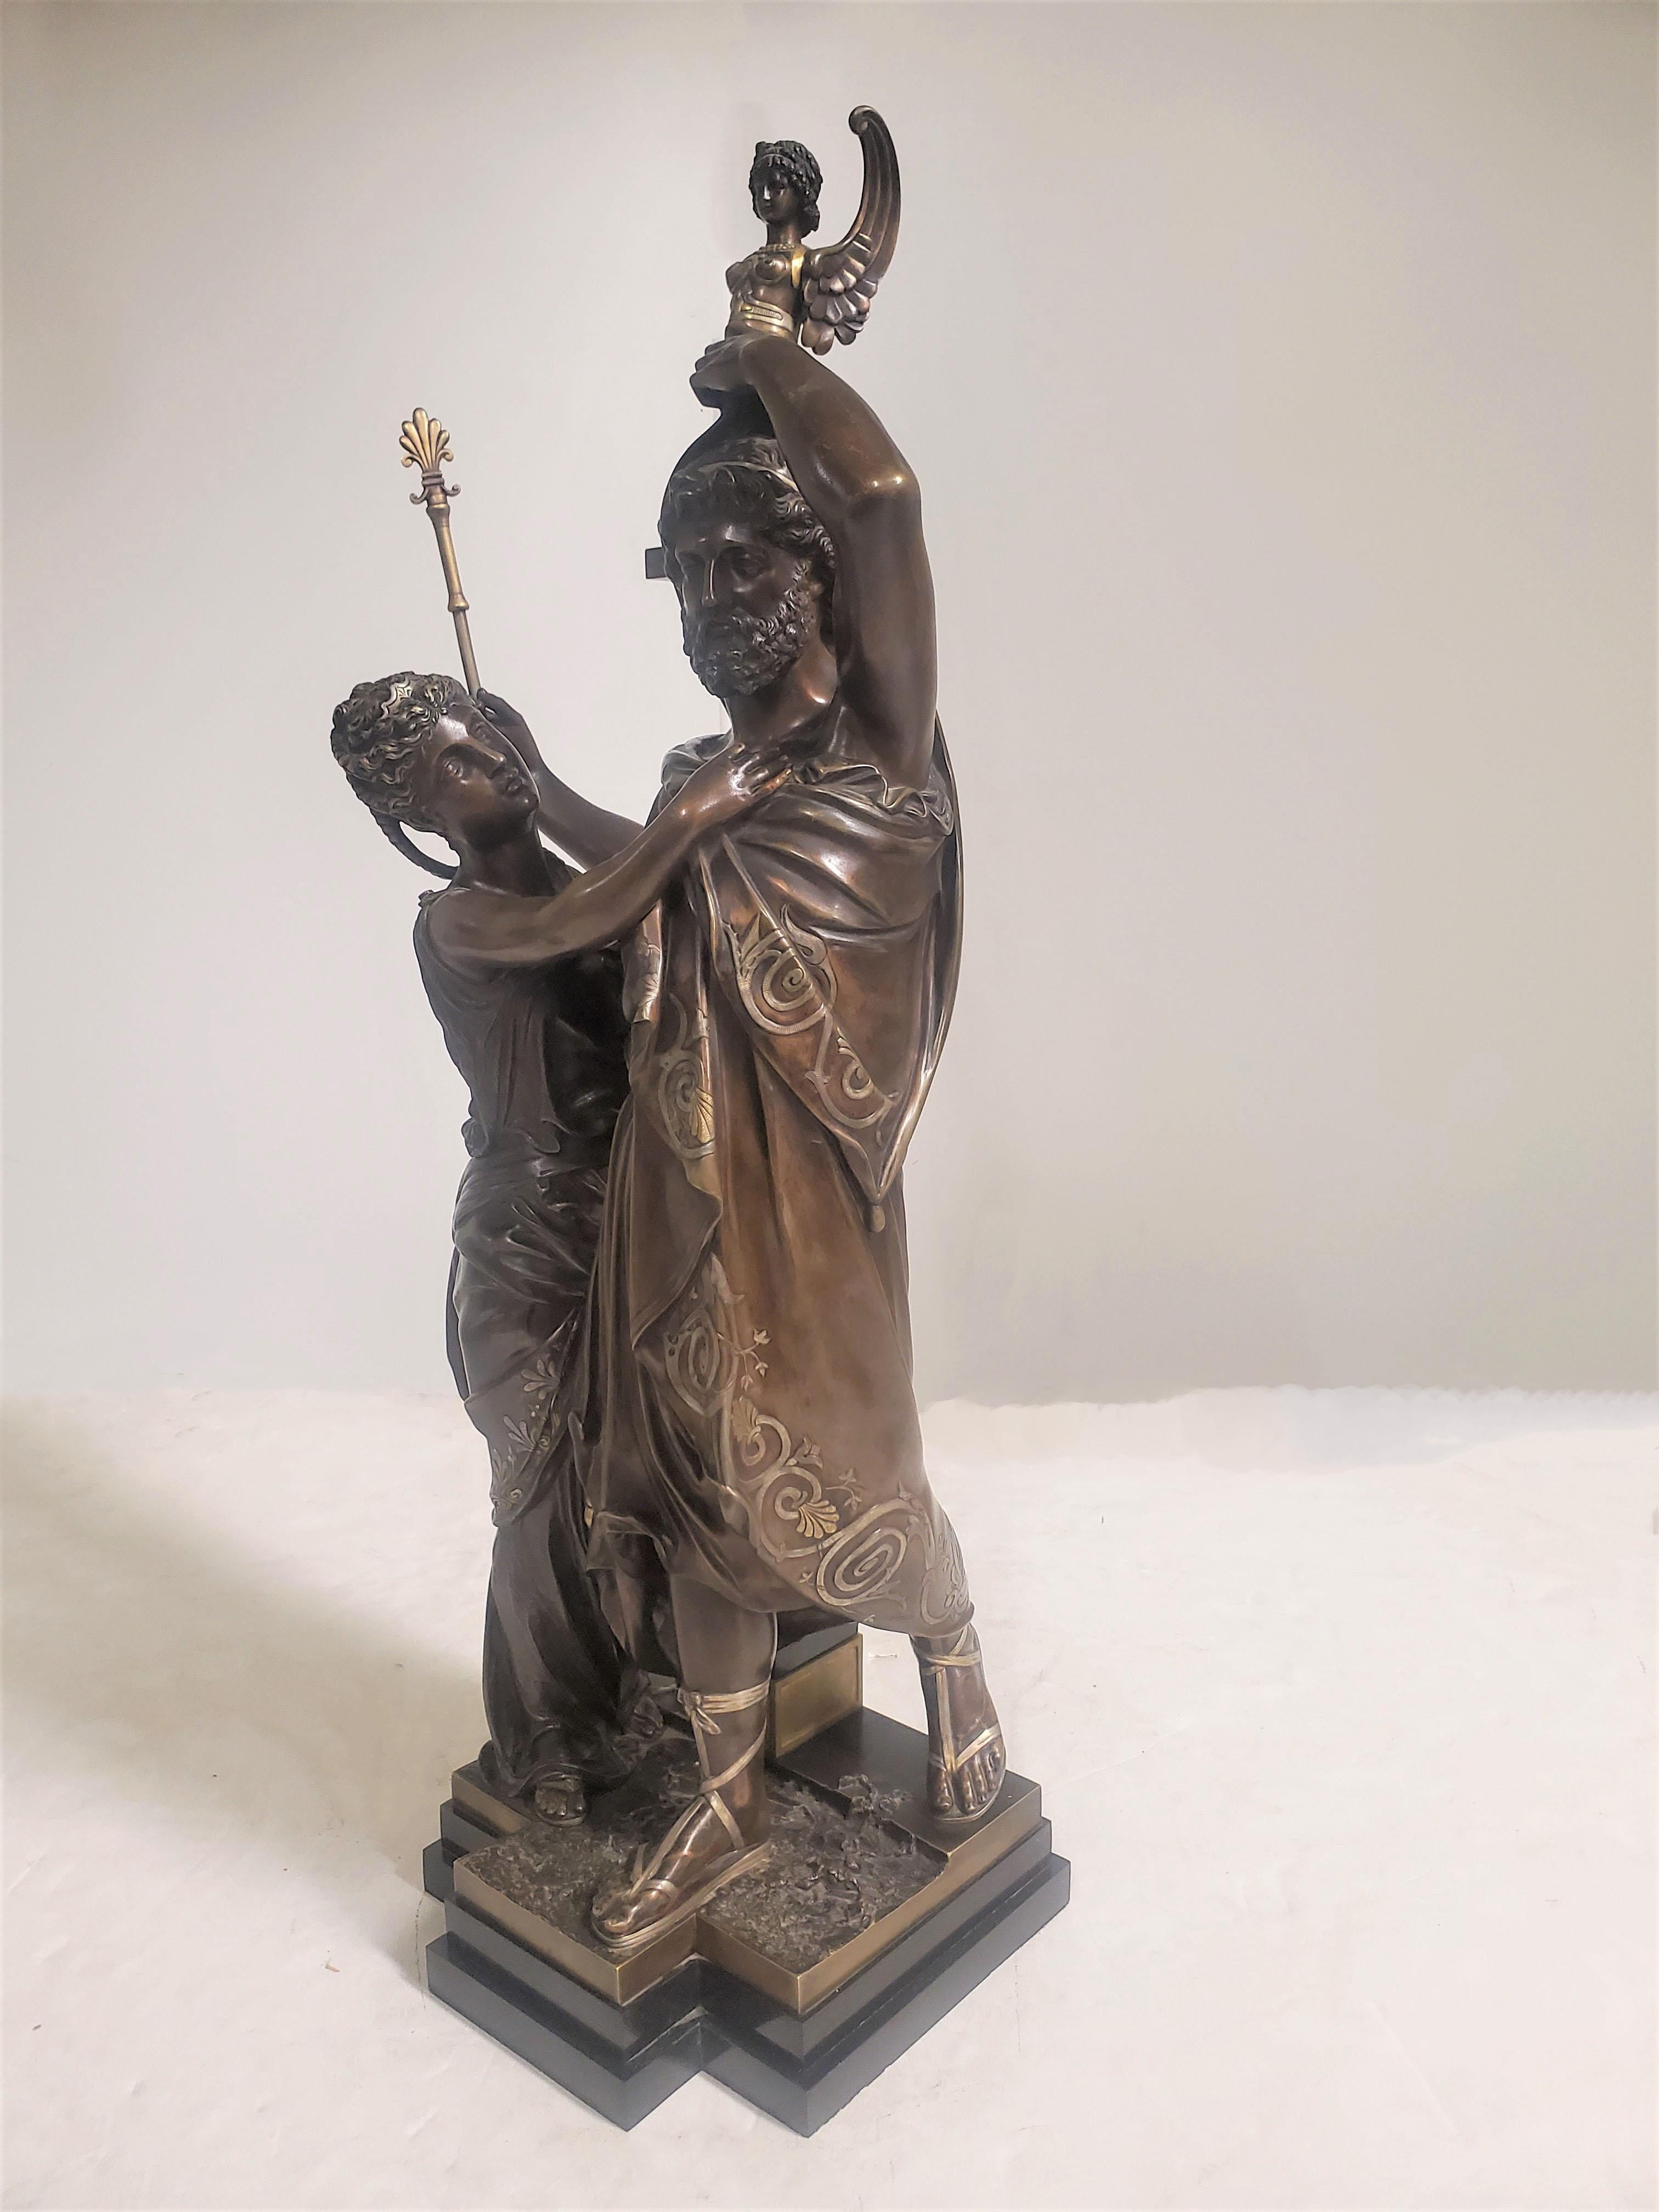 Importante sculpture multifonctionnelle en bronze du 19ème siècle représentant un homme et une femme, en patine brune chaude avec une décoration inhabituelle et rare en or et argent. 
Représentation d'un roi avec sa reine ou sa compagne à ses